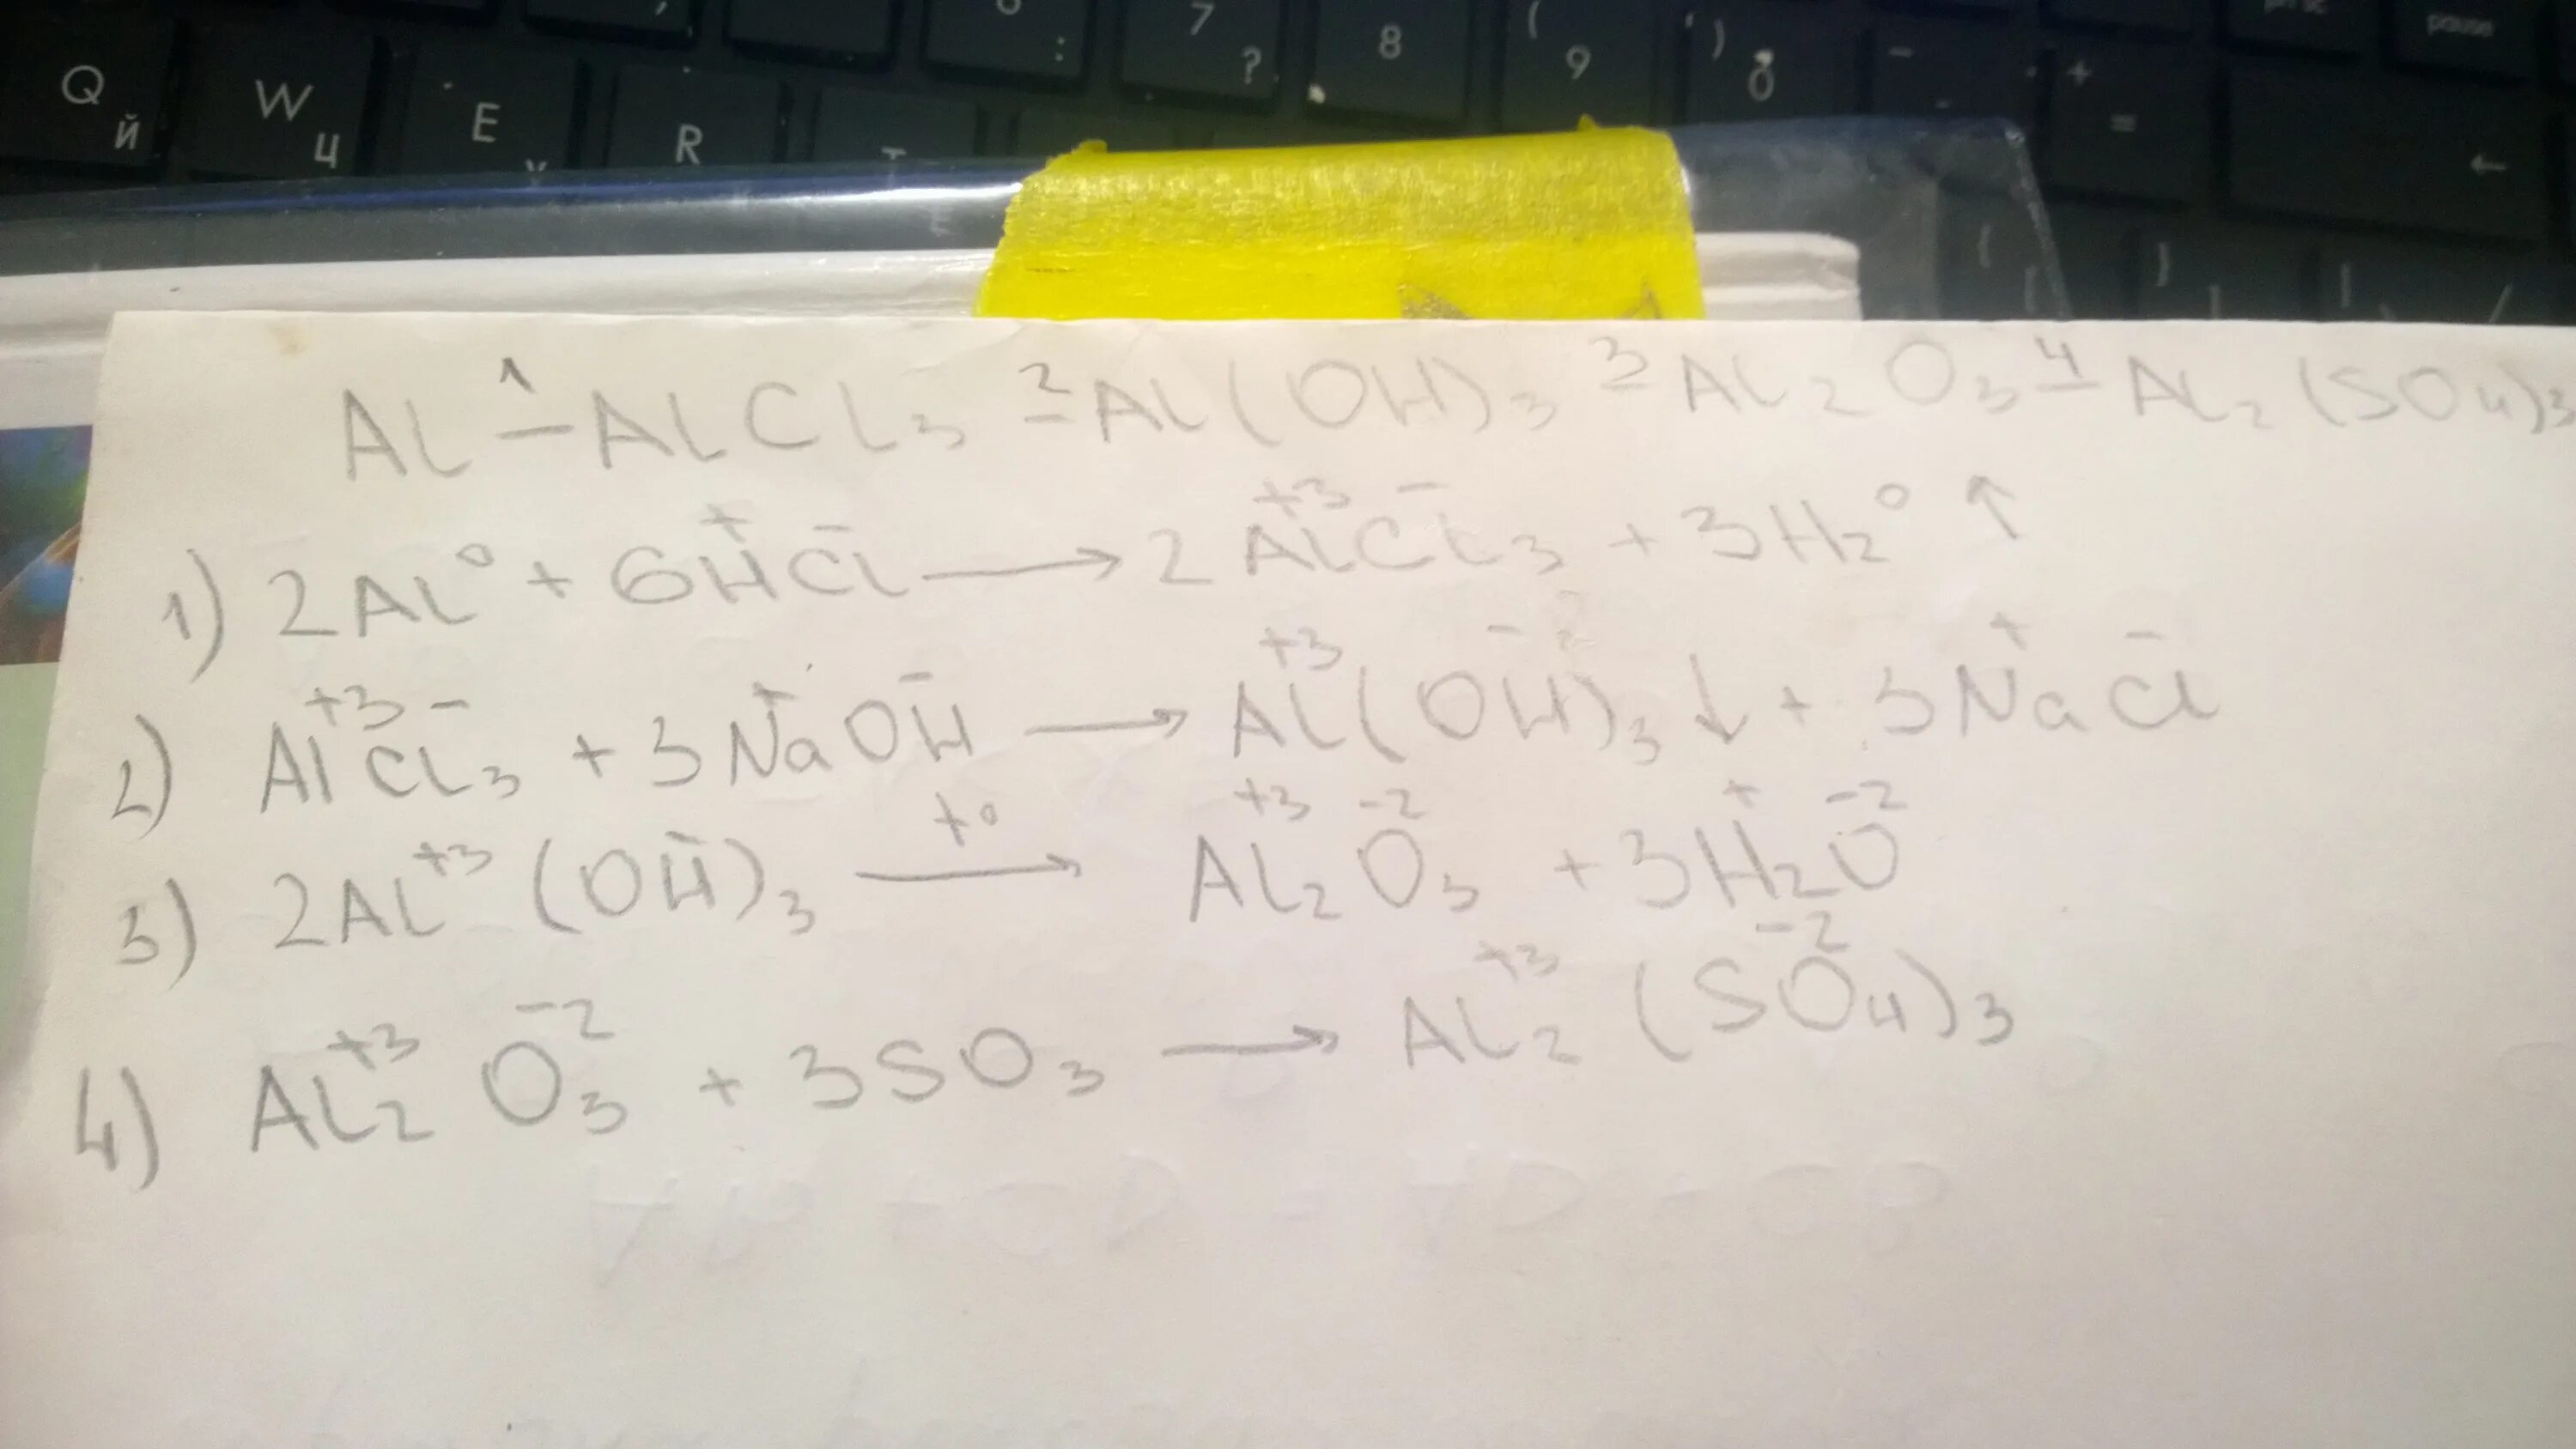 Al oh 2 no3 название соли. Al2 so4 3 alcl3 цепочка превращений. Al2o3 al2 so4 3 al Oh 3 al2o3 уравнение. Al al2o3 alcl3 al Oh 3. Al2o3→ al → alcl3 → al2(so4)3 → x → kalo2 → k[al(нo)4].